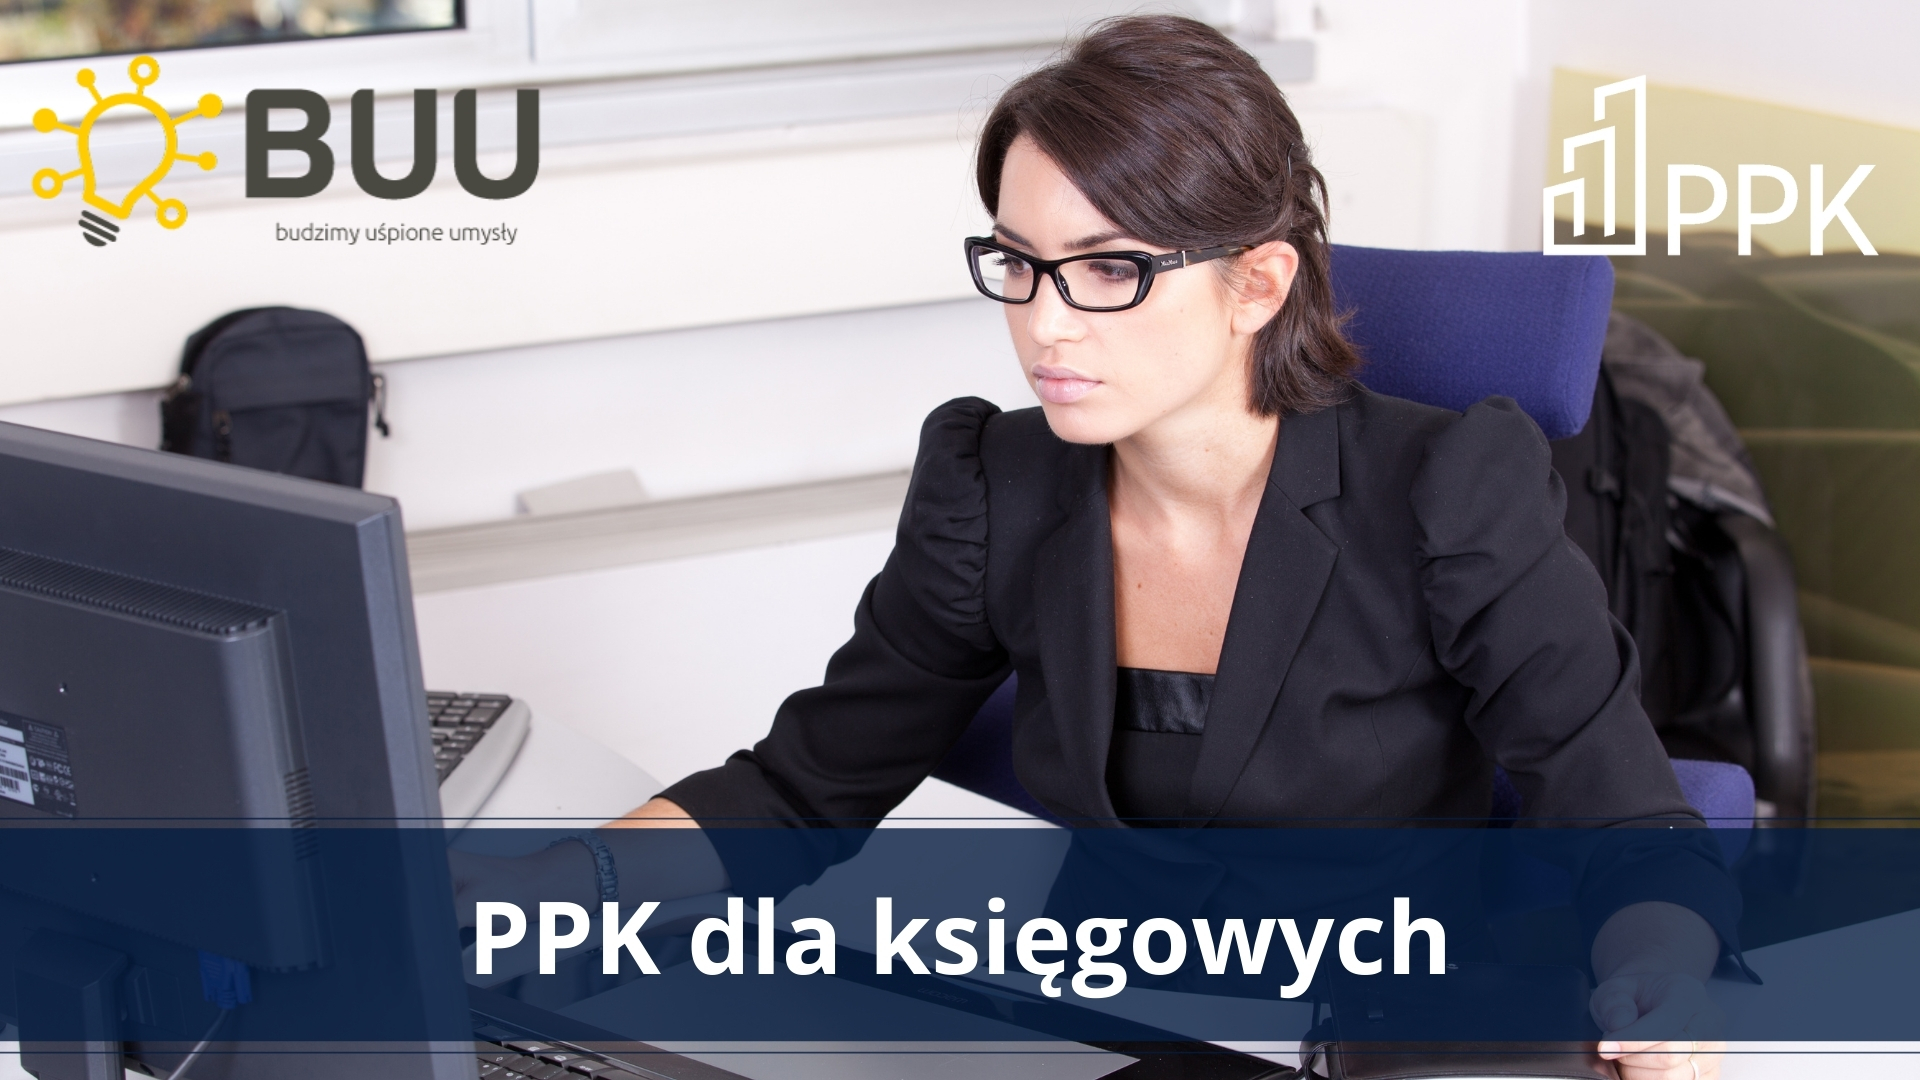 PPK dla księgowych – szkolenia z fundacją BUU